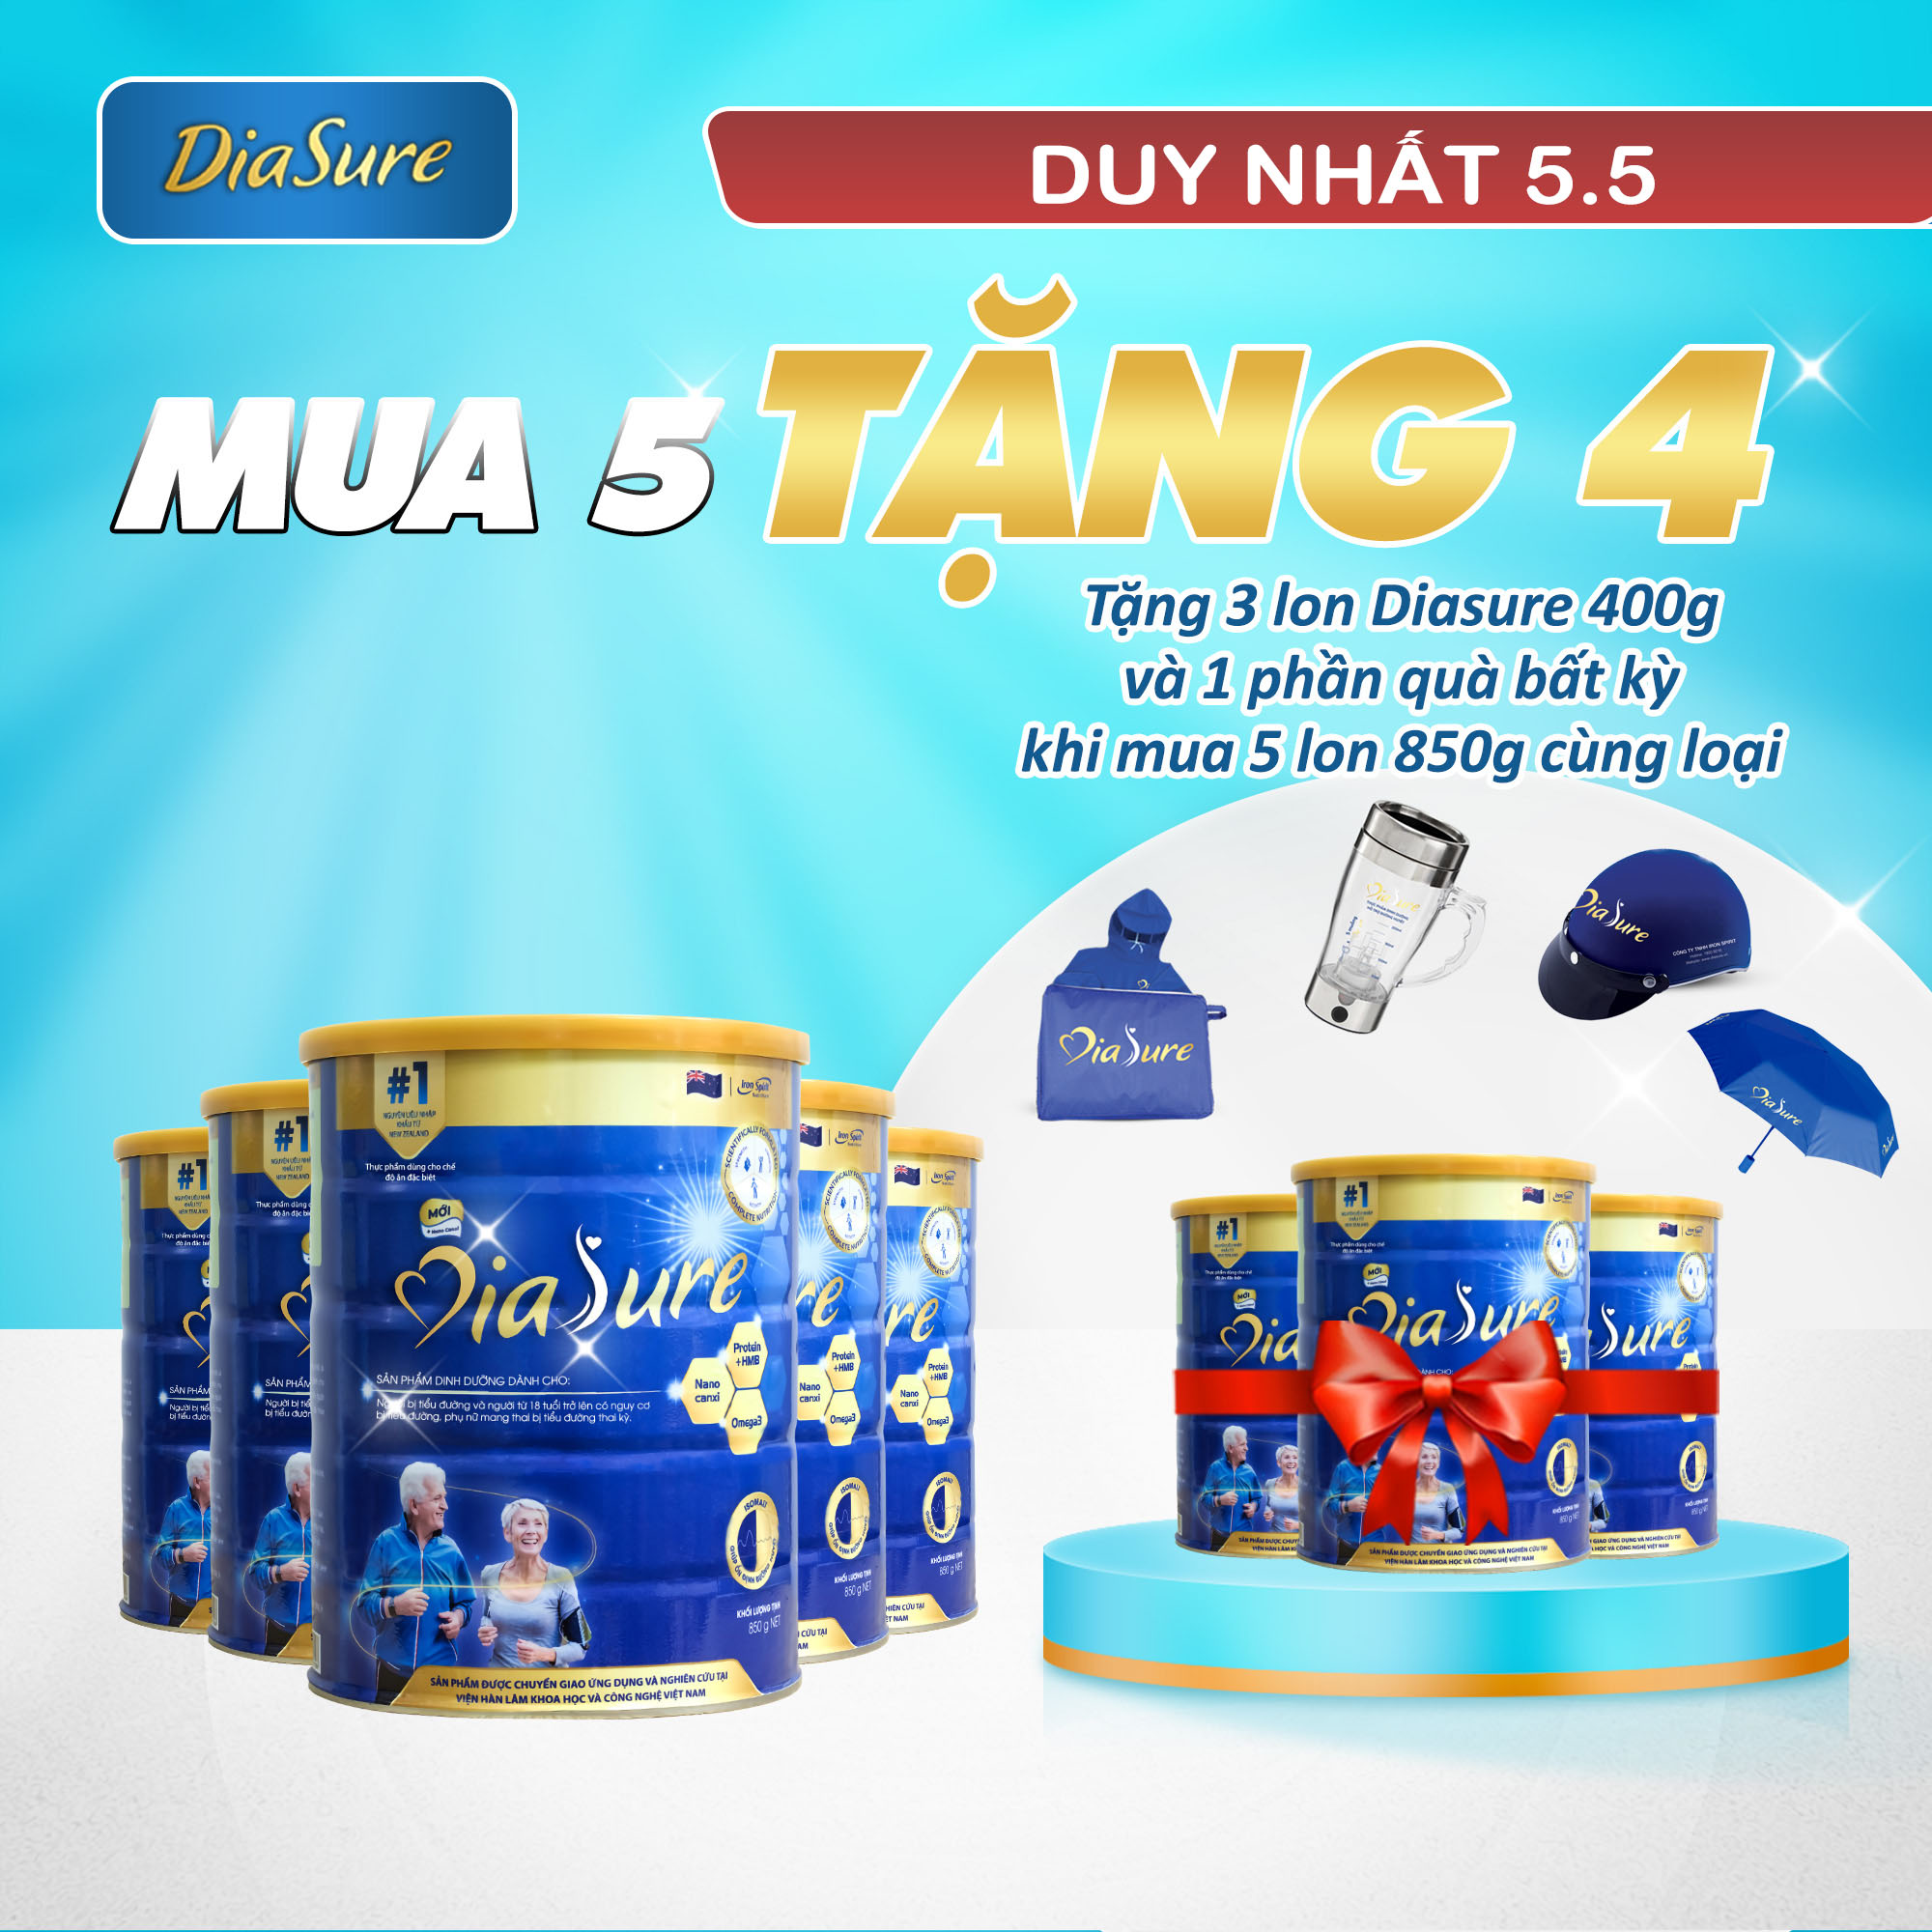 Sữa Non Diasure 850G (NEW) bổ sung thêm Nano Canxi, Omega3, Protein HMB  (Mua 5 tặng 3 hộp 450G)-Sữa dành cho người tiểu đường